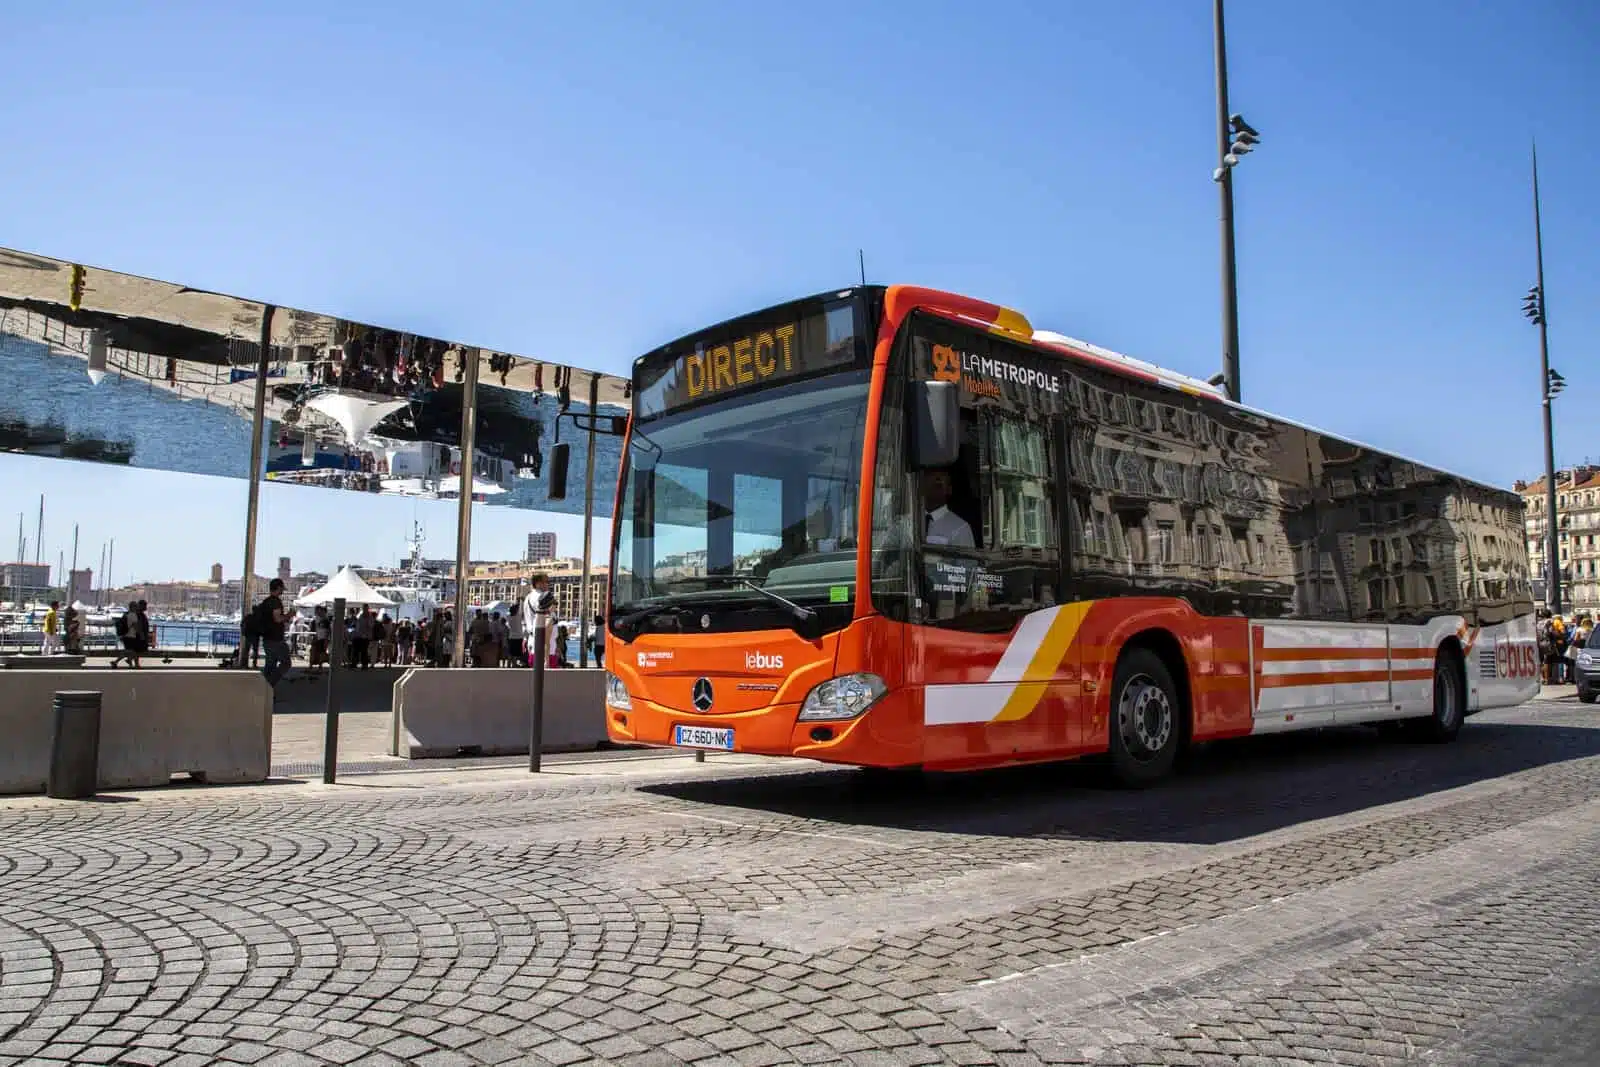 gratuité transports, La gratuité des transports en commun va être réétudiée par la Métropole, Made in Marseille